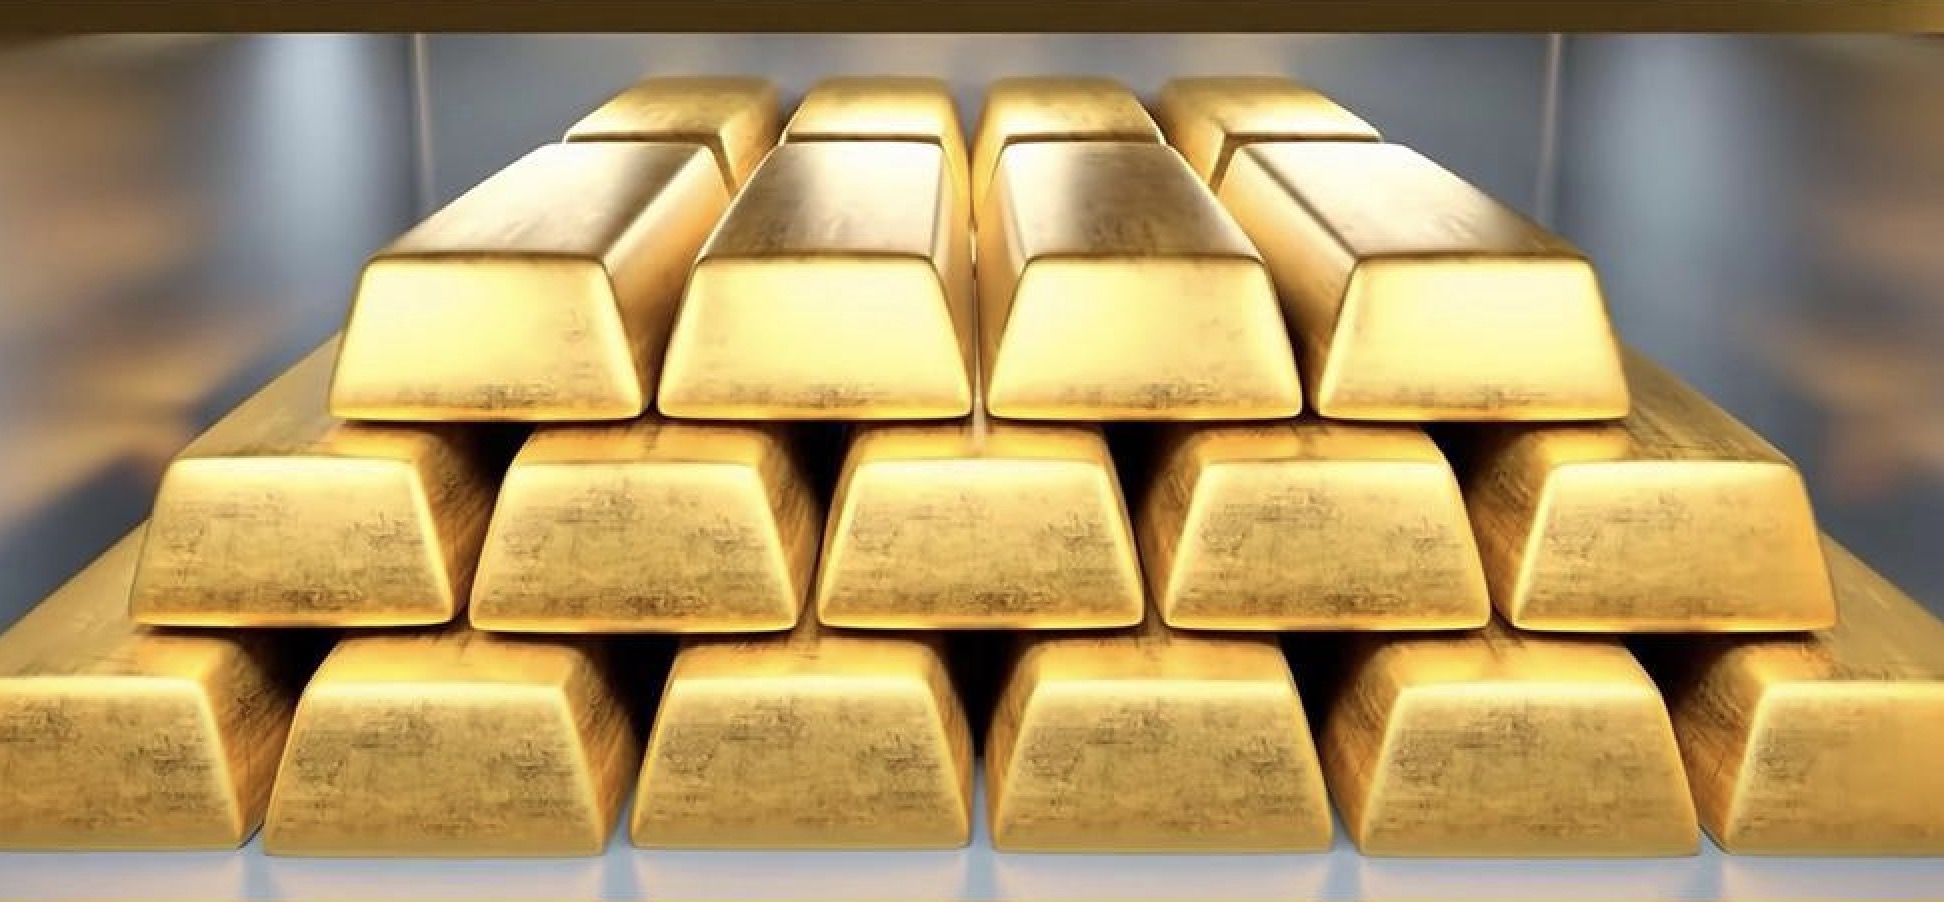 คำเตือนการซื้อขายทองคำ: "Eagle" ของพาวเวลล์ล้นหลาม ราคาทองคำถูกบล็อกที่ 2,400 ระวังความเสี่ยงที่จะเกิดภาวะช็อค